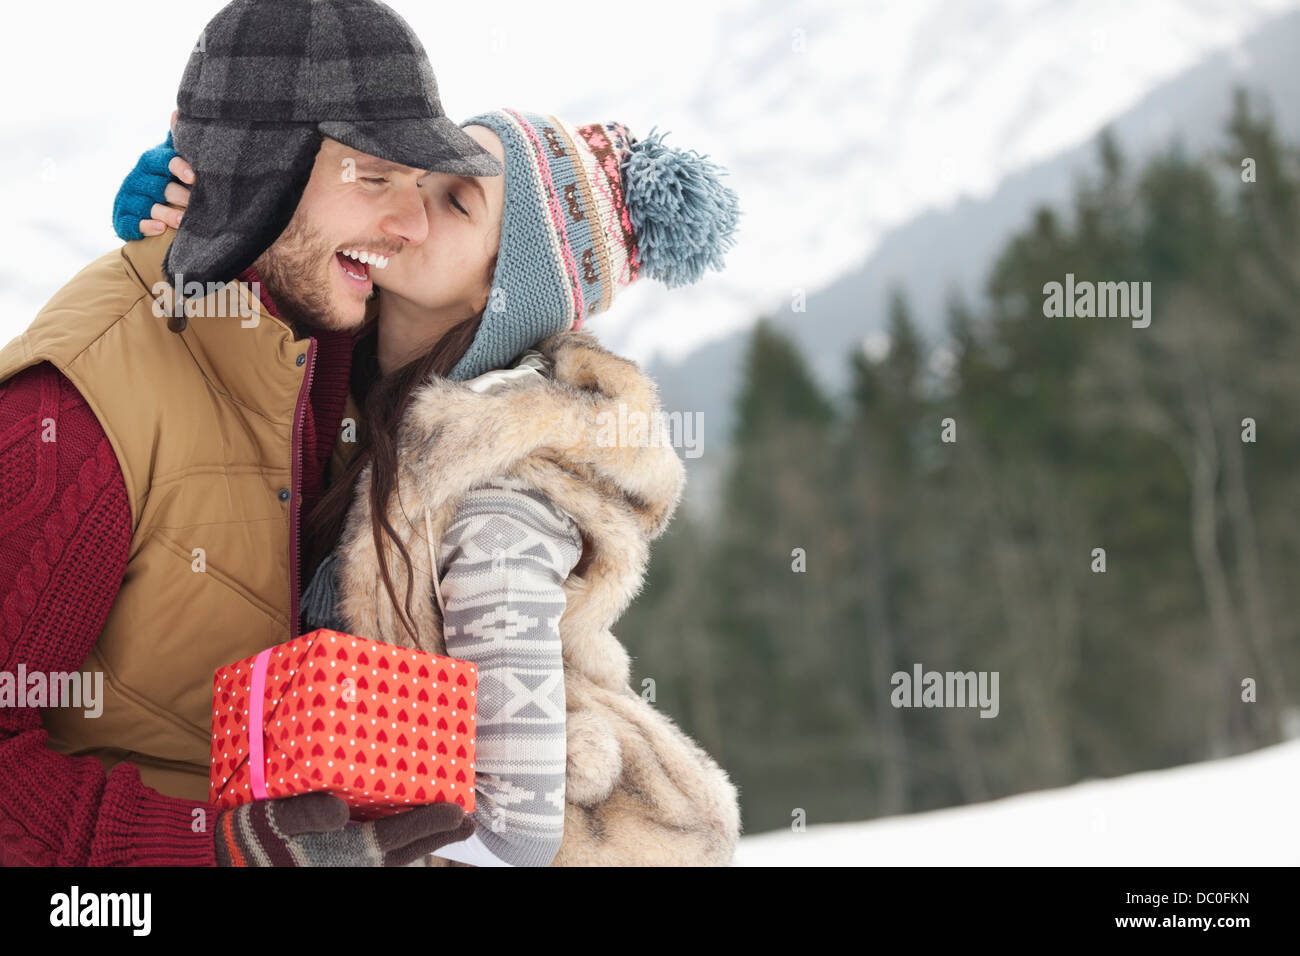 Brautpaar mit Weihnachten Geschenk kissing in schneebedecktes Feld Stockfoto